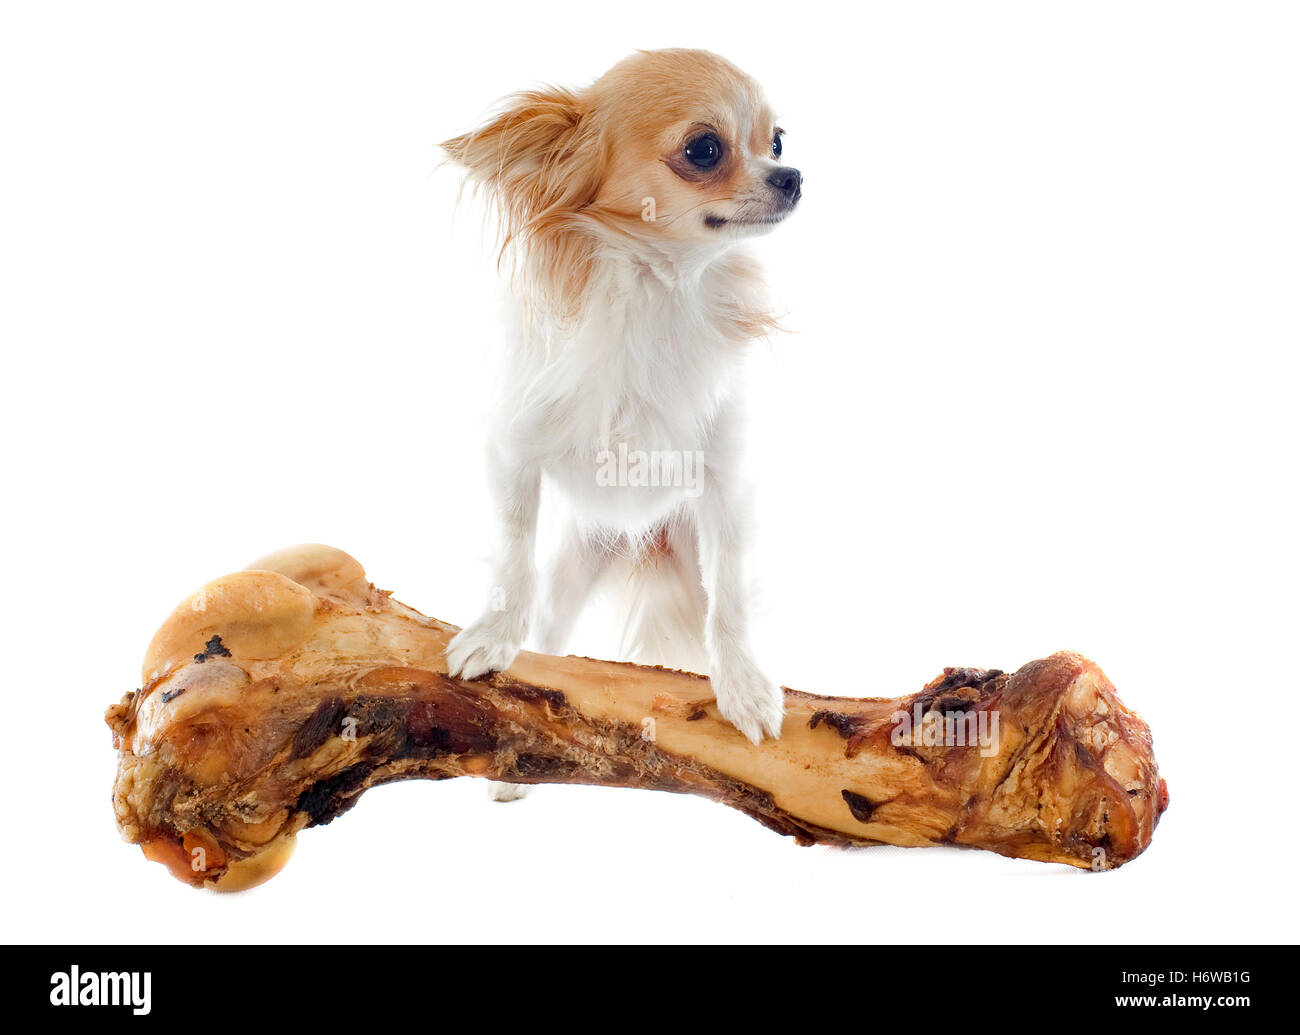 große große enorm extreme mächtige imposante immense relevanten weitgehend Hund Welpe Knochen Essen Essen isst schöner beauteously schön Stockfoto